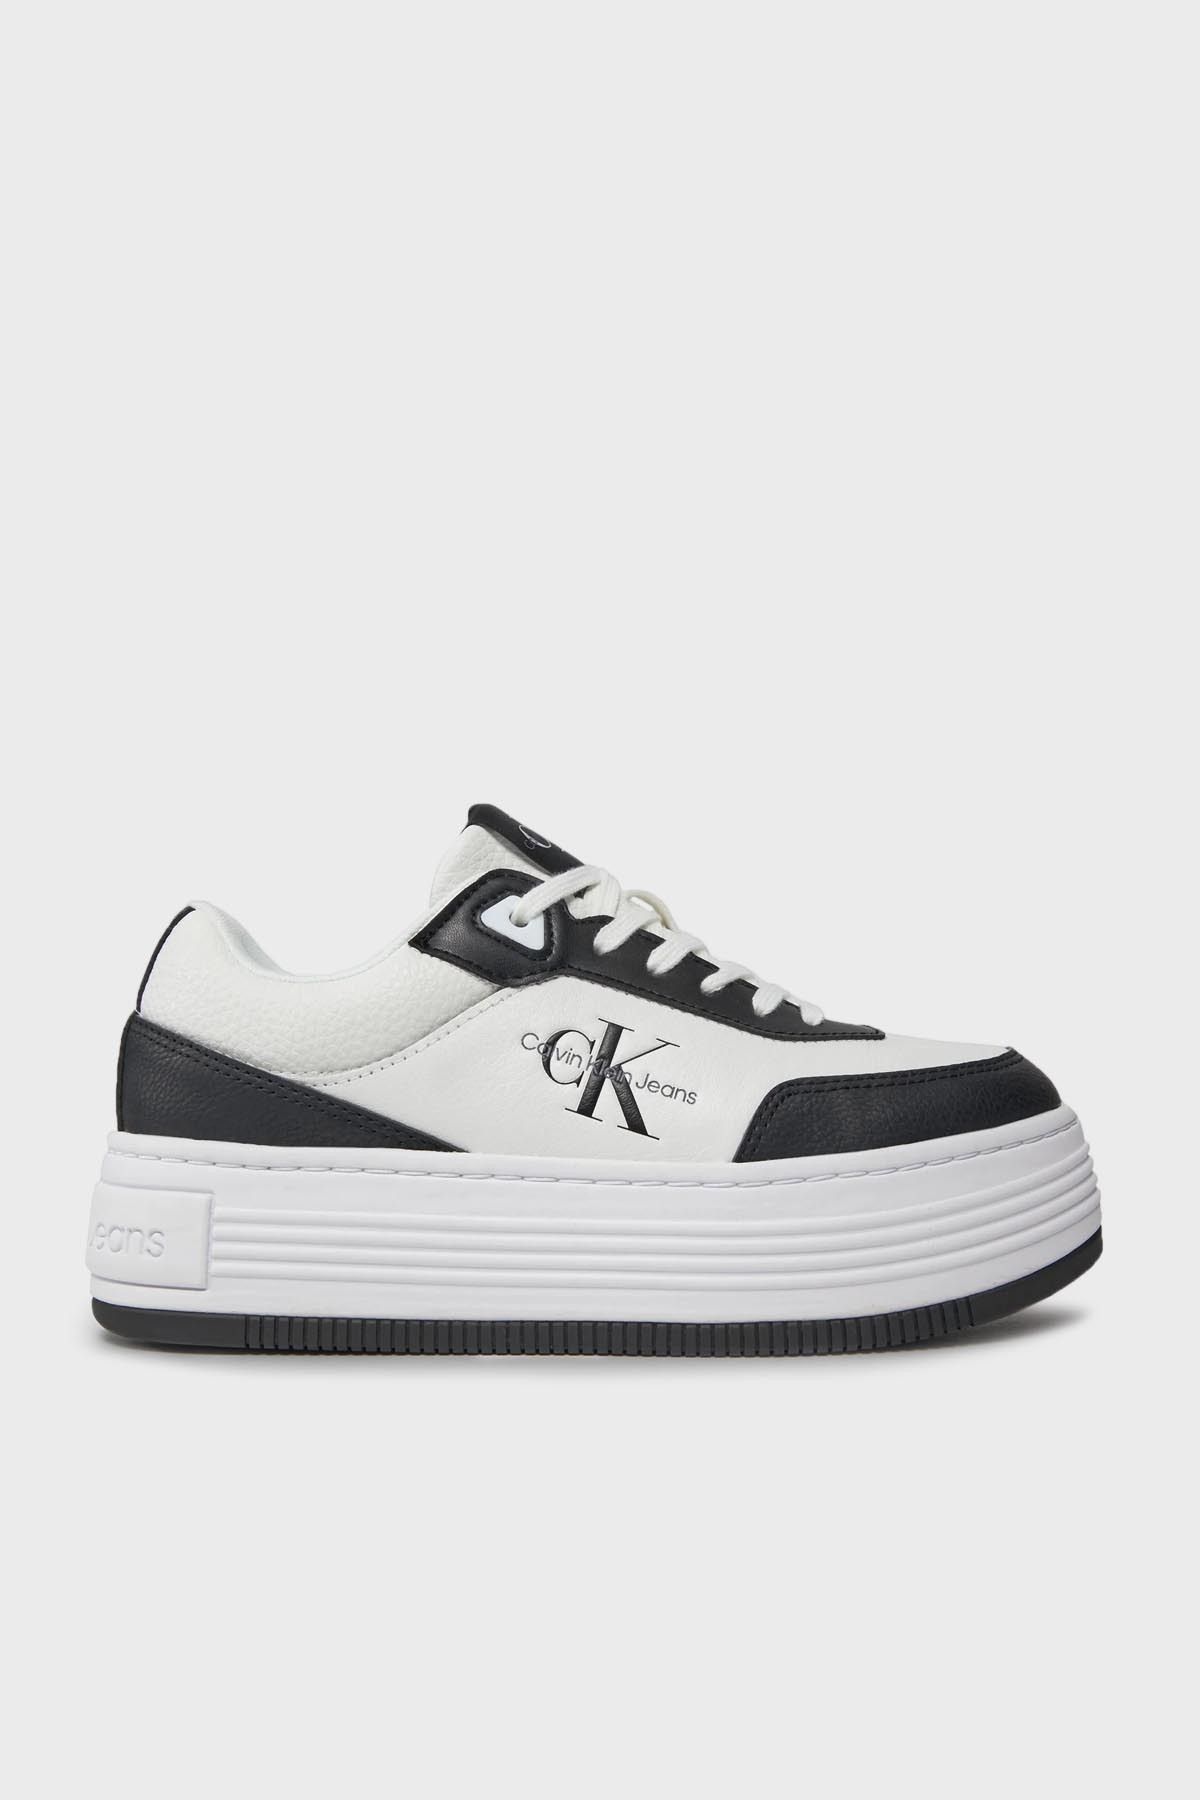 Calvin Klein Logolu Kalın Tabanlı Sneaker Ayakkabı YW0YW013160GM AYAKKABI YW0YW01316 0GM